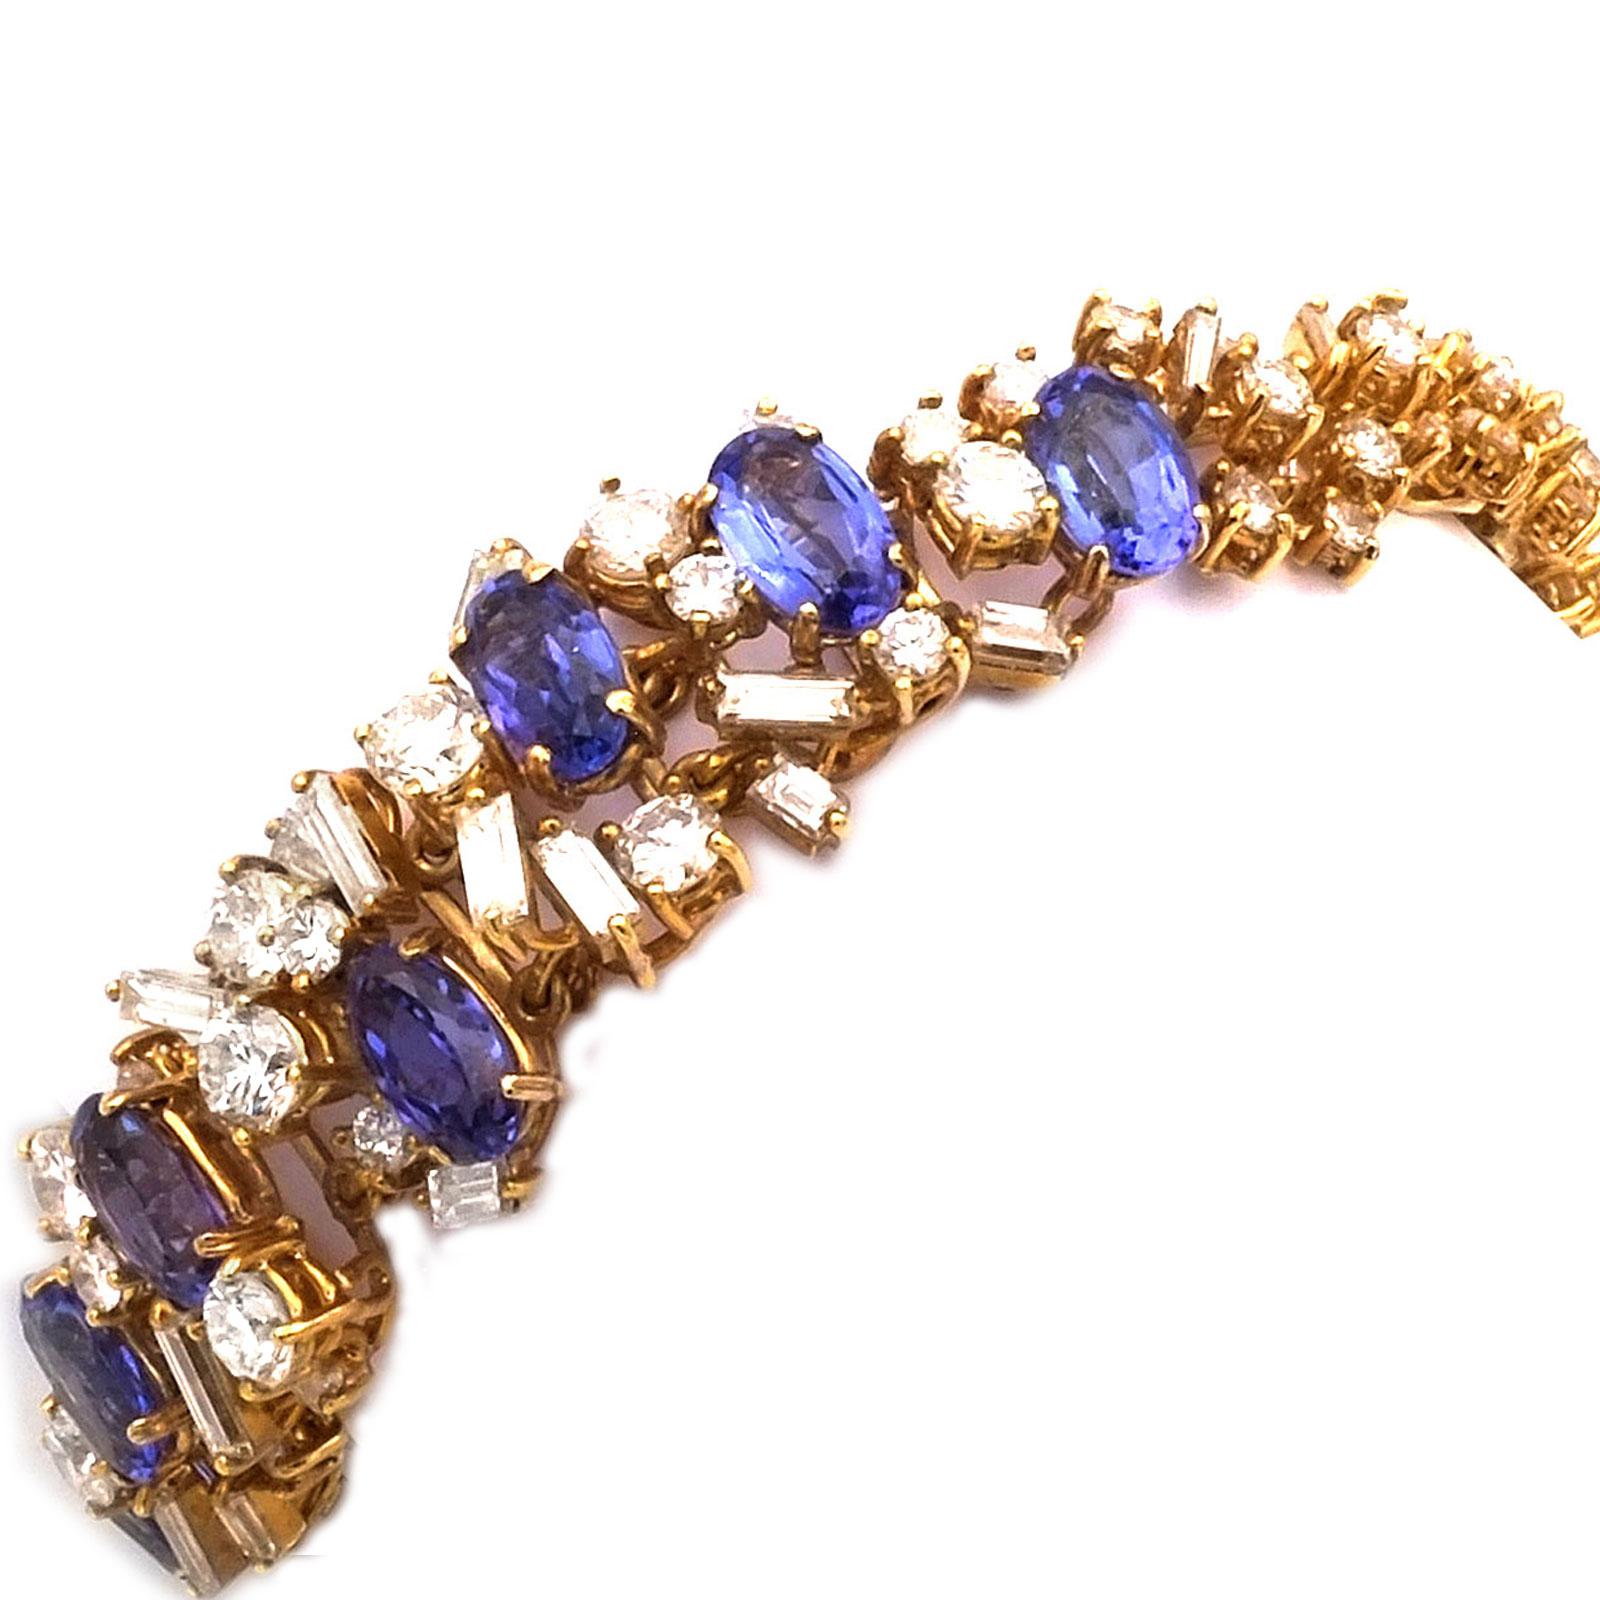 Tansanit- und 12-Karat-Diamantenarmband aus 18K Gold, um 1970

Sehr markantes, florales Armband aus hochkarätigem Gold, durchbrochen und besetzt mit 8 leuchtend blau-violetten Tansaniten mit insgesamt 7,65 ct, umgeben von 121 glänzenden Diamanten im